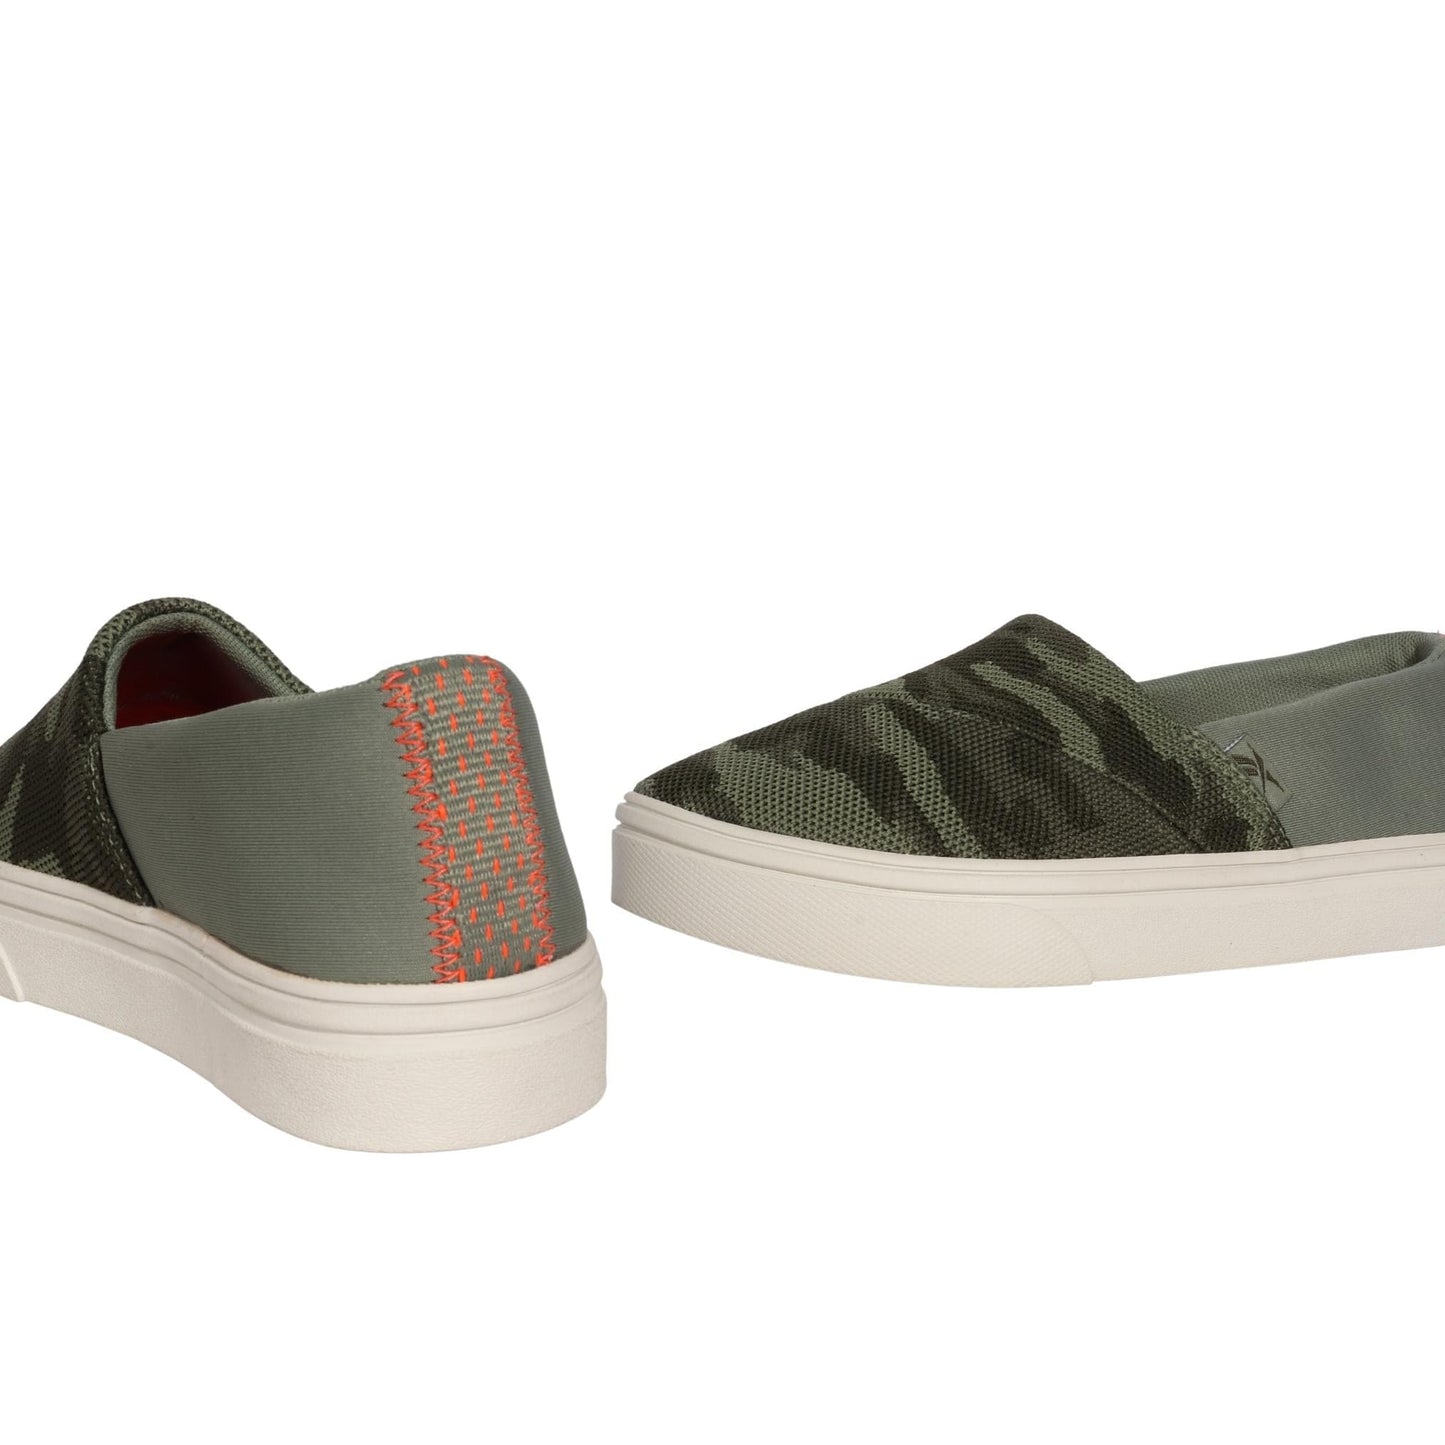 REEBOK Womens Shoes 36 / Green REEBOK -  Slip-On Printed Casual Sneakers